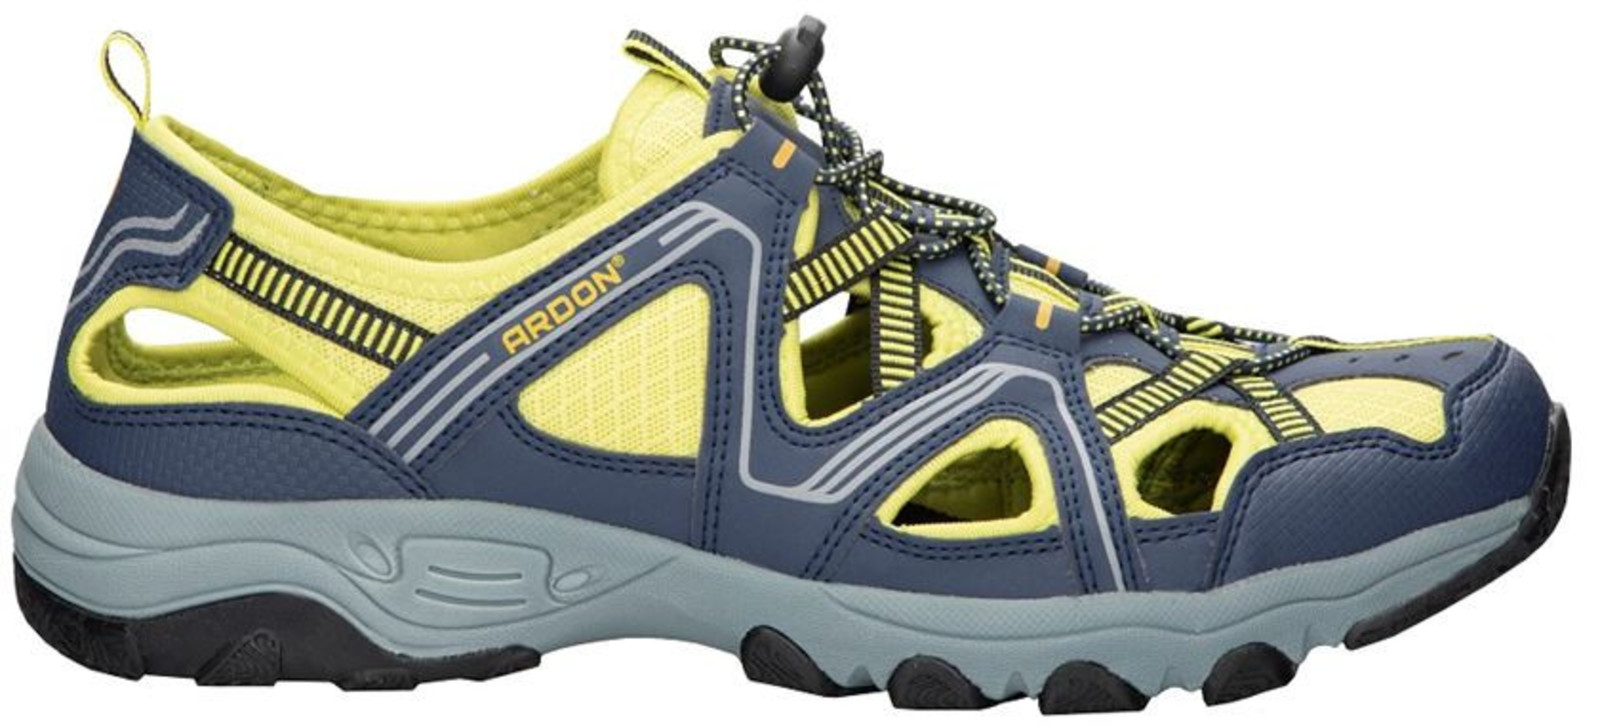 Trekové sandále Ardon Strand - veľkosť: 45, farba: modrá/žltá